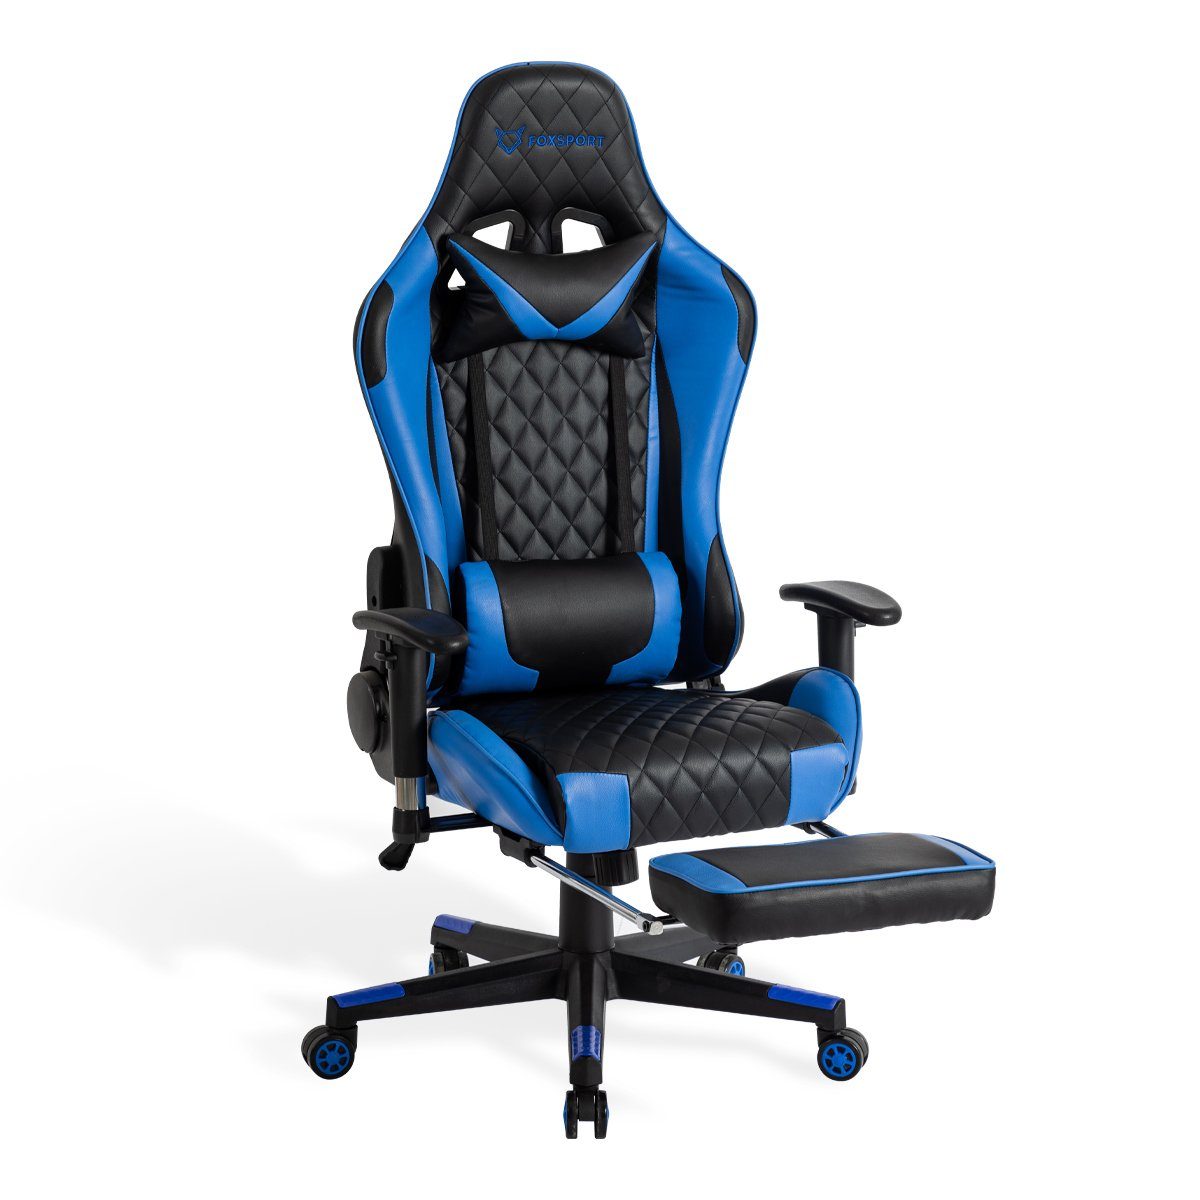 IKIDO Gaming-Stuhl Pedal-Gaming-Stuhl (Professioneller Gamingstuhl), Mit Beinauflage und Fußstütze, Eingebauter Wippmechanismus blau | Stühle